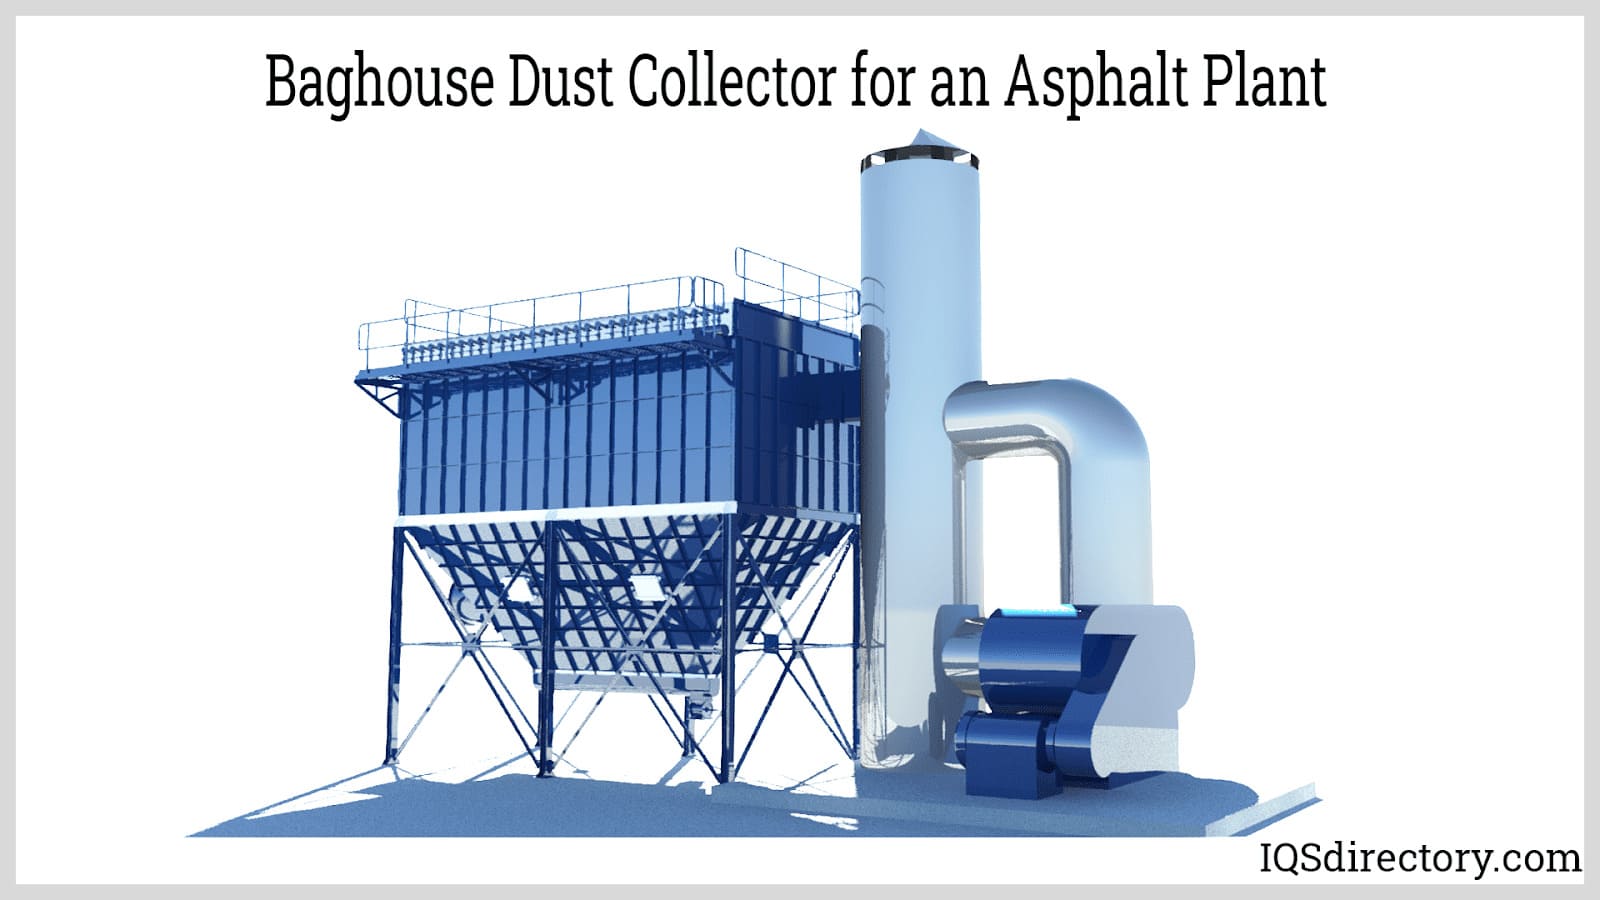 Baghouse Dust Collector for an Asphalt Plant